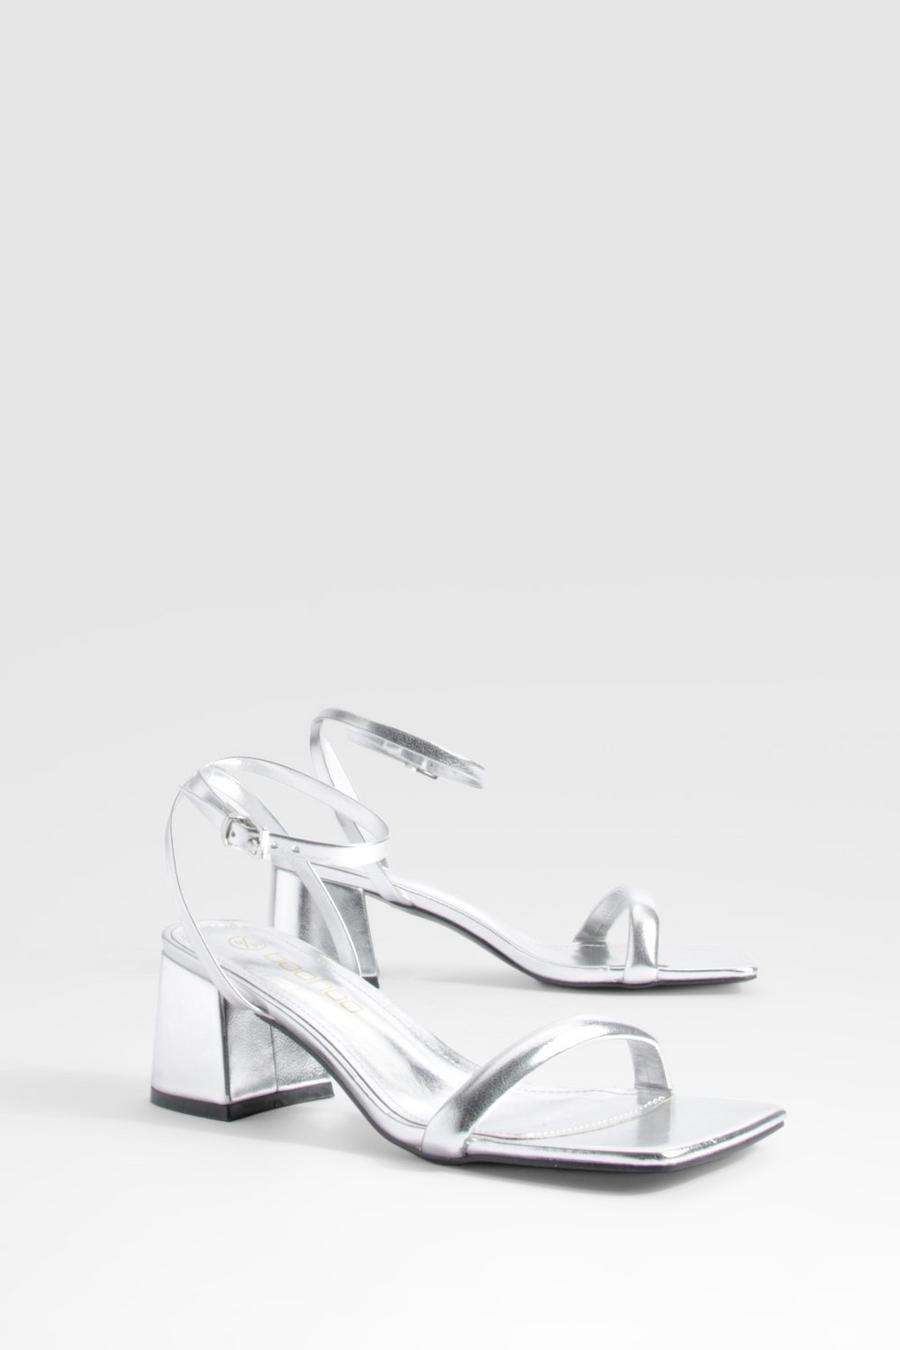 Chaussures métallisées à talon carré, Silver